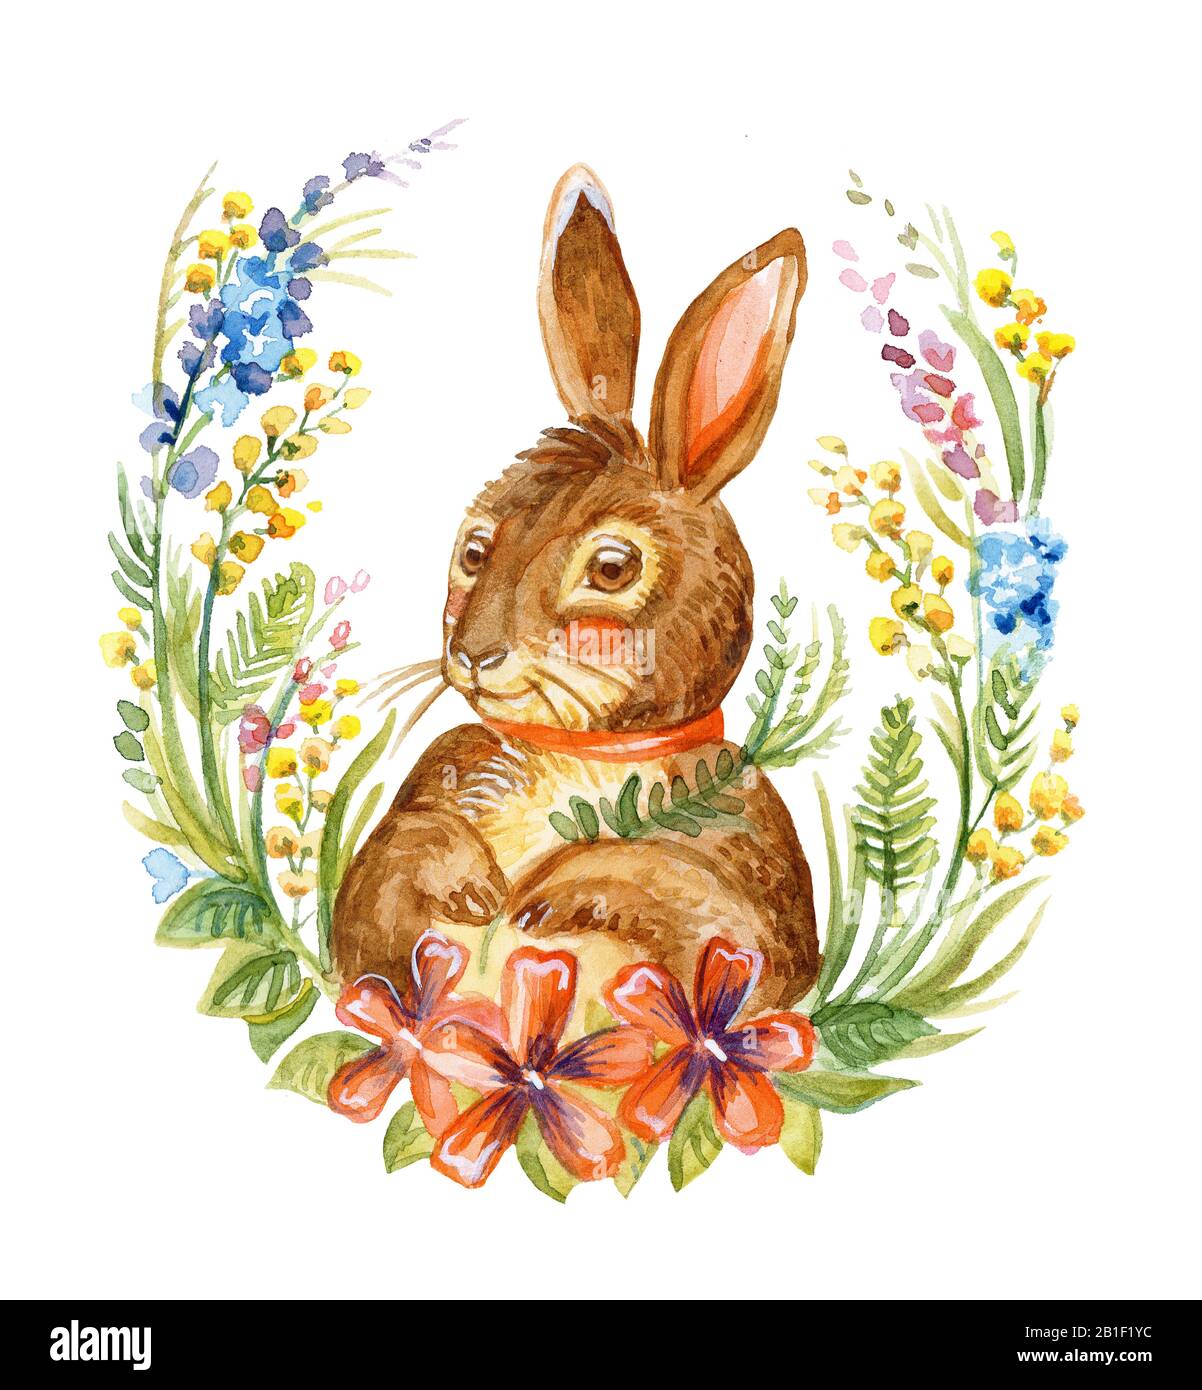 Illustration en aquarelle d'un lapin assis sur la couronne de fleurs de printemps, illustration du stock. Des personnages de lapin de Pâques vintage illustration isolée sur Banque D'Images